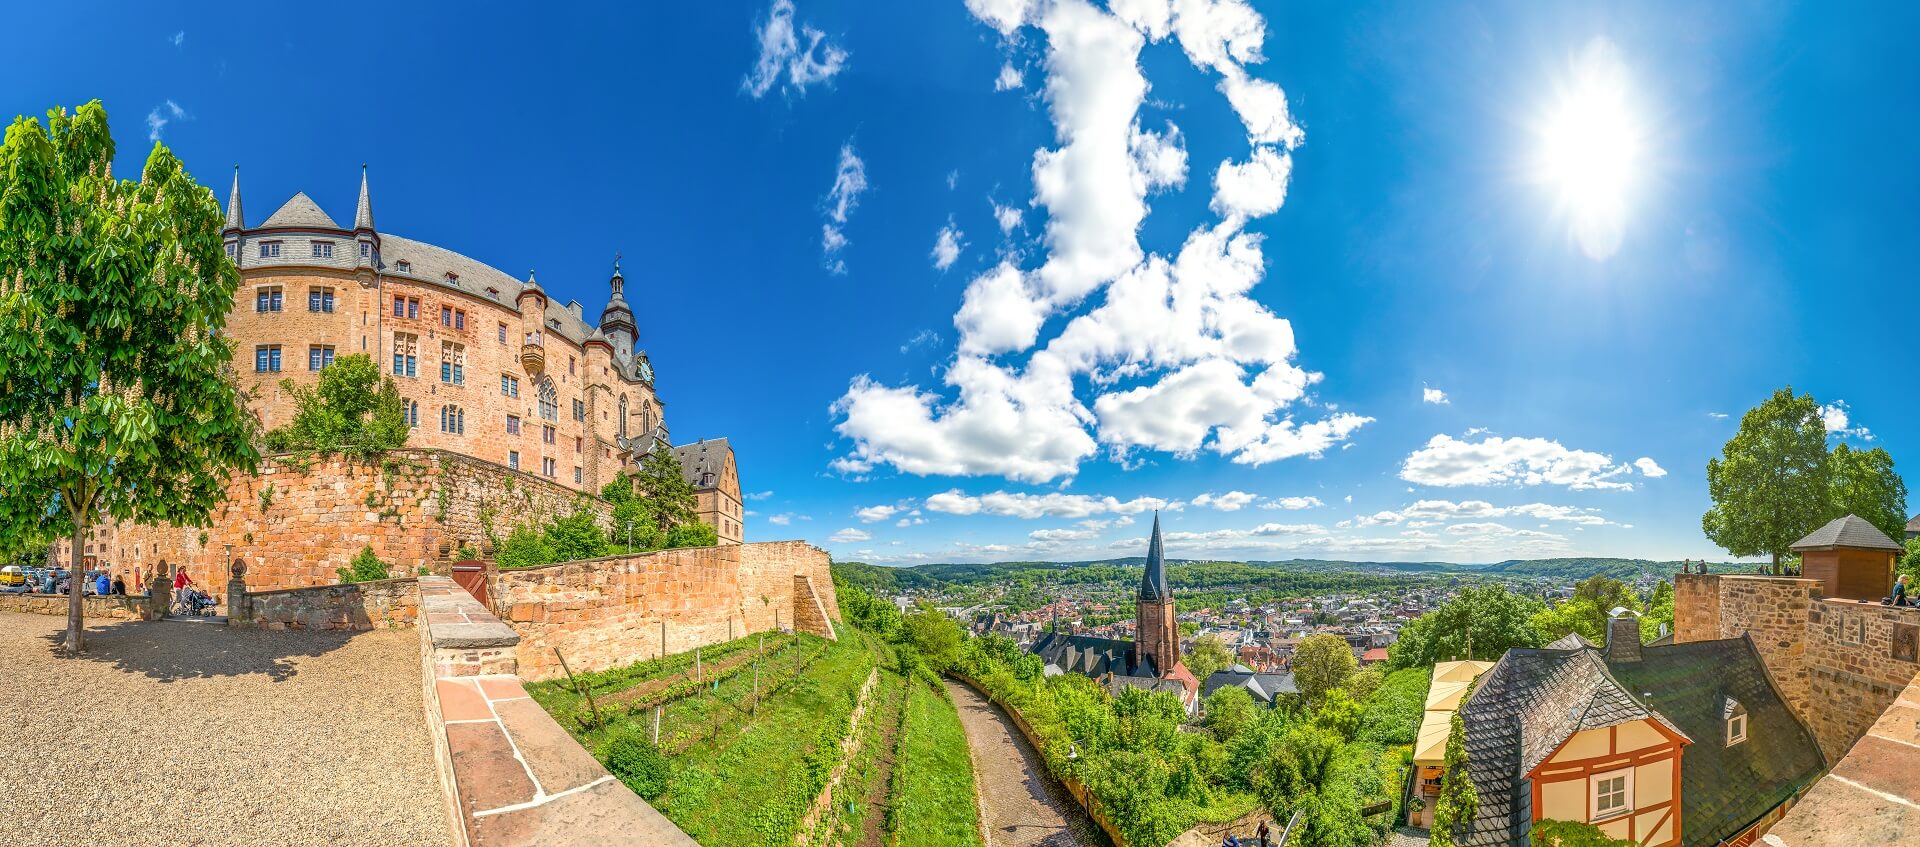 Landgrafenschloss in Marburg mit Aussicht auf die Stadt